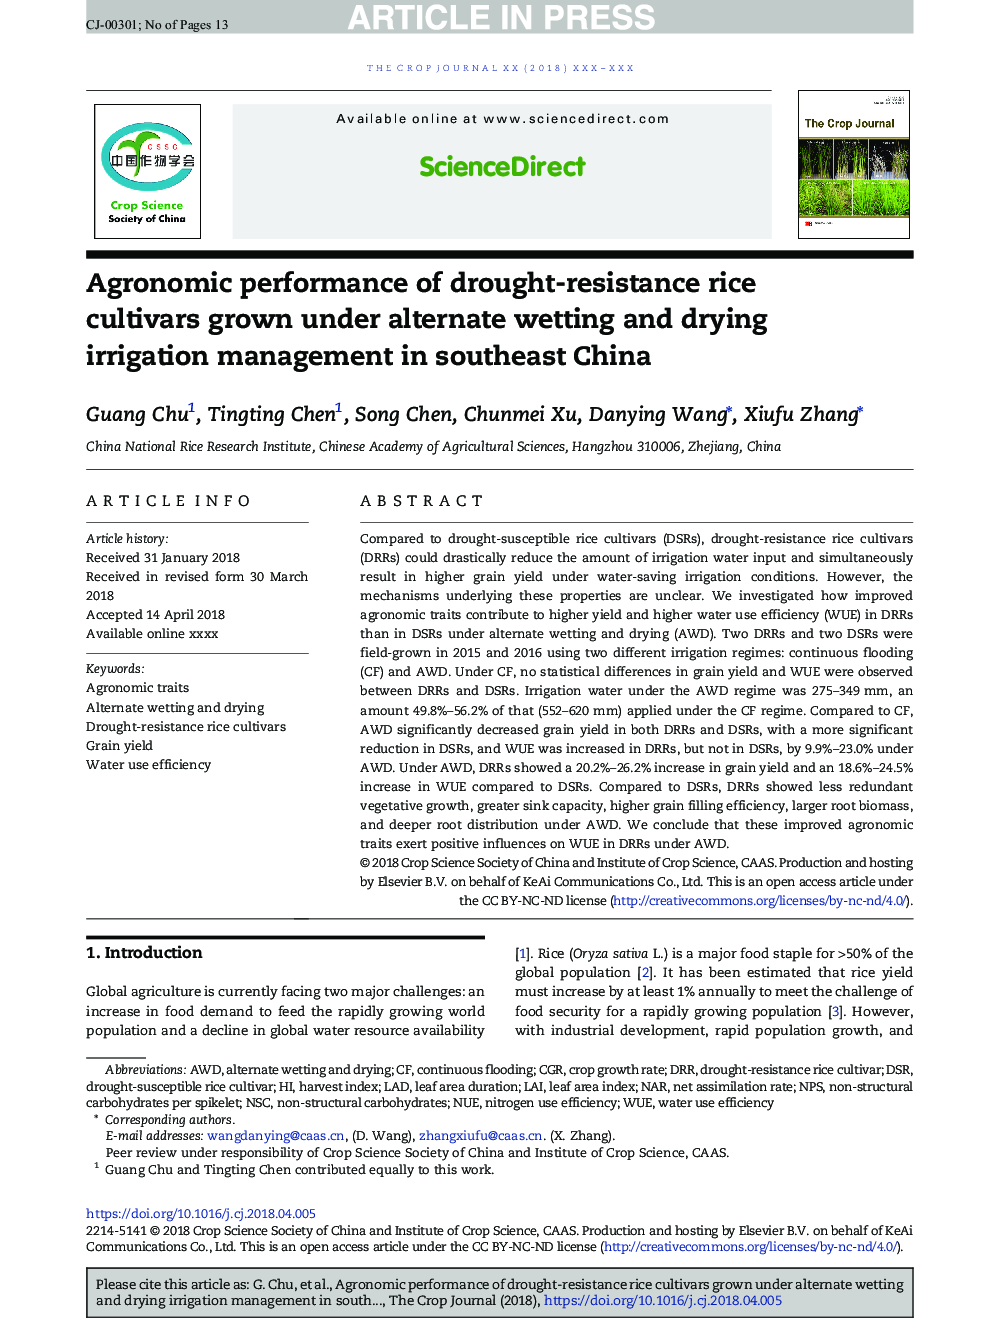 عملکرد زراعی مقاومت ارقام مقاوم به خشکی ارقام برنج تحت مدیریت آبیاری خیساندن و خشک کردن جایگزین در جنوب شرقی چین